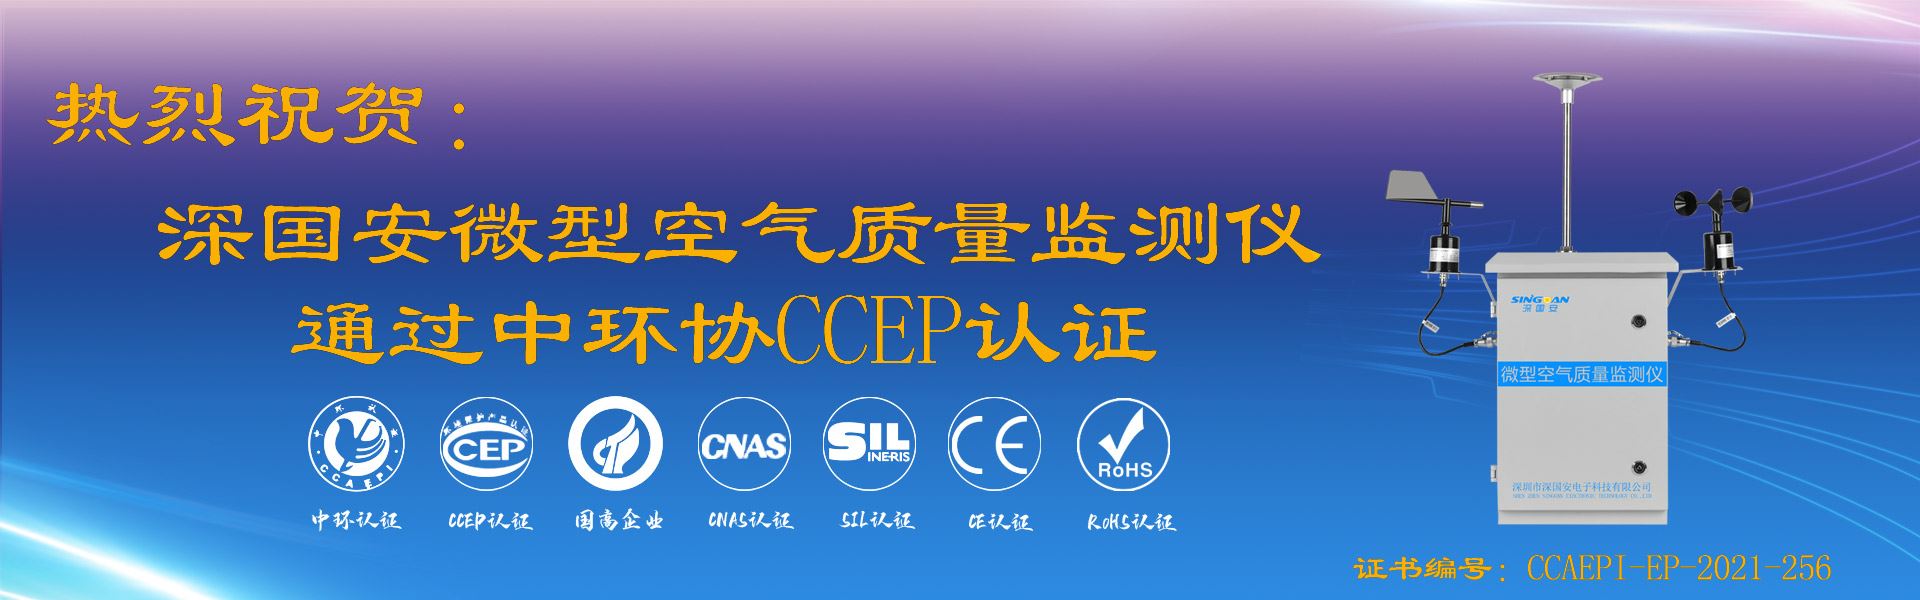 微型空气质量监测仪通过CCEP认证